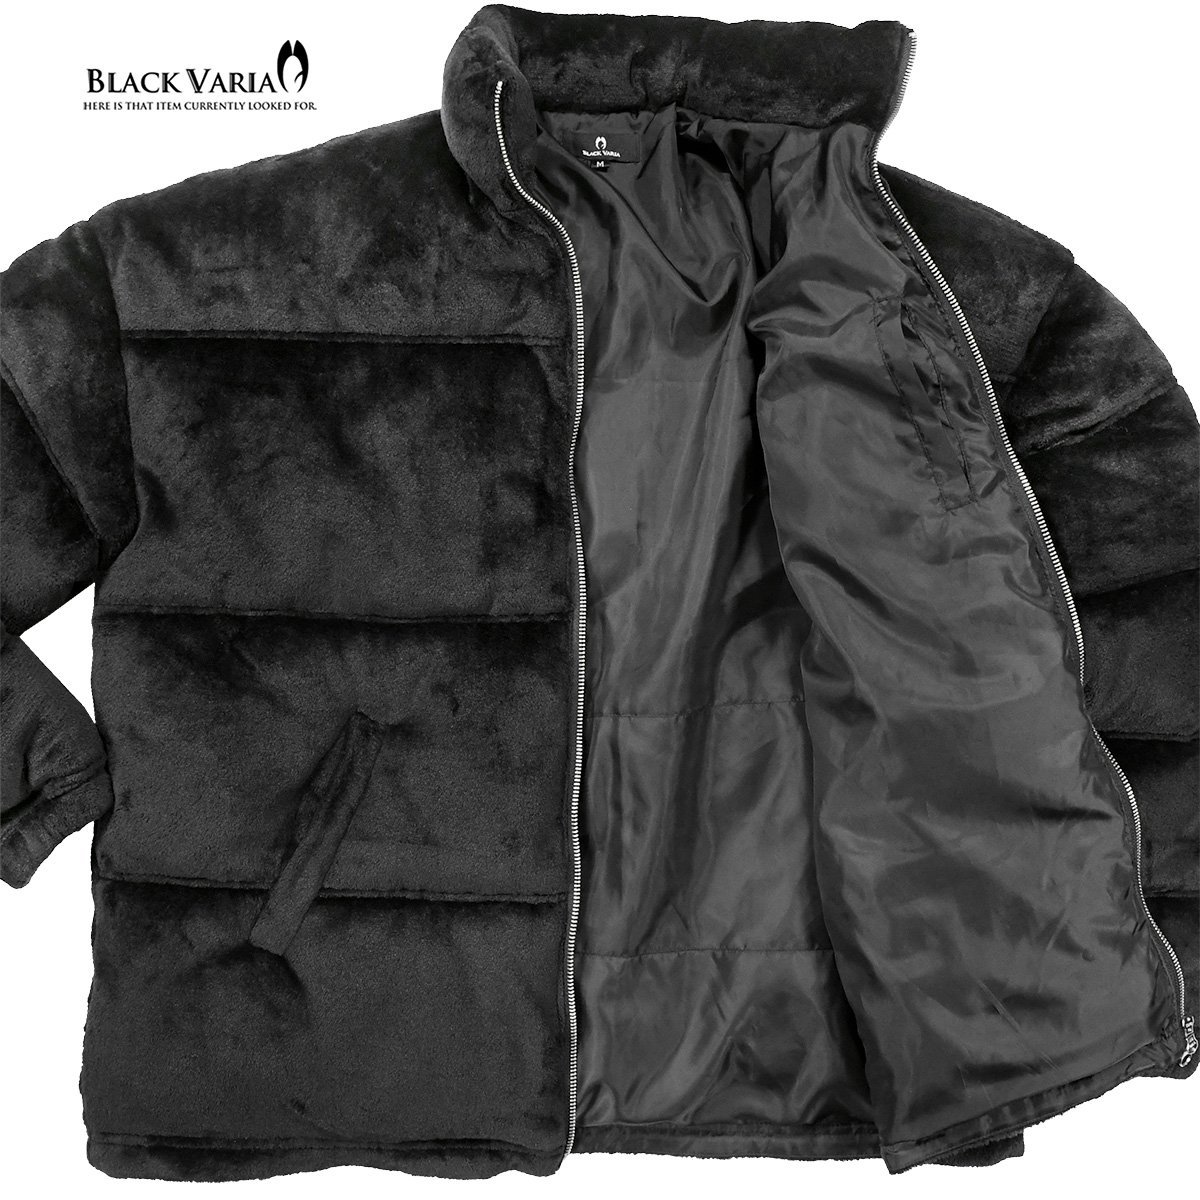 424007-20 BlackVaria ファーブルゾン 中綿ジャケット オーバーサイズ 無地 アウター パデッドジャケット メンズ(ブラック黒) M ゆったり_画像7